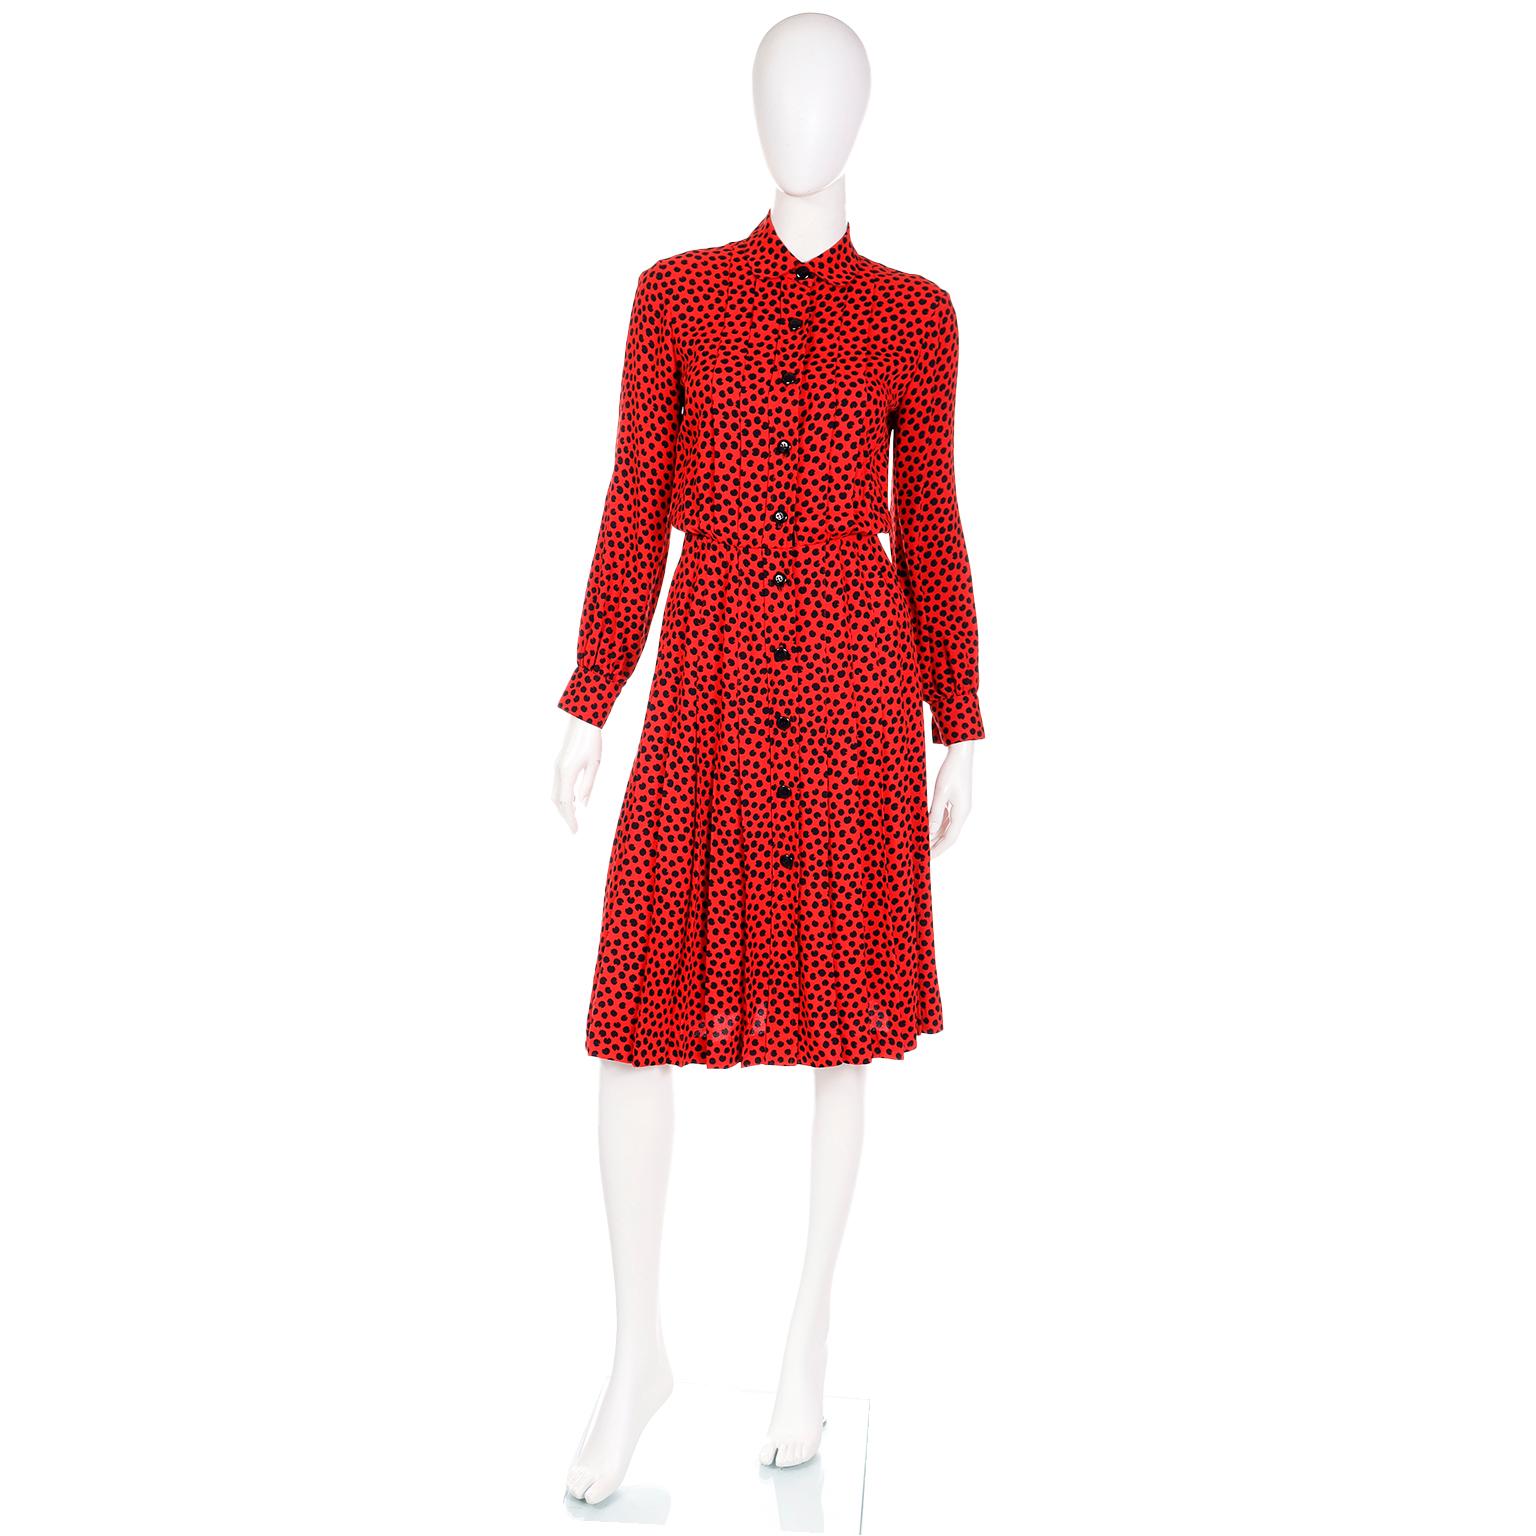 Dieses schöne Kleid mit abstraktem Print in Rot und Schwarz aus den 1980er Jahren ist ein typisches Design von Yves Saint Laurent. Saint Laurent verstand die wahre Macht der Accessoires und kreierte Kleider, die für sich allein stehen oder mit dem